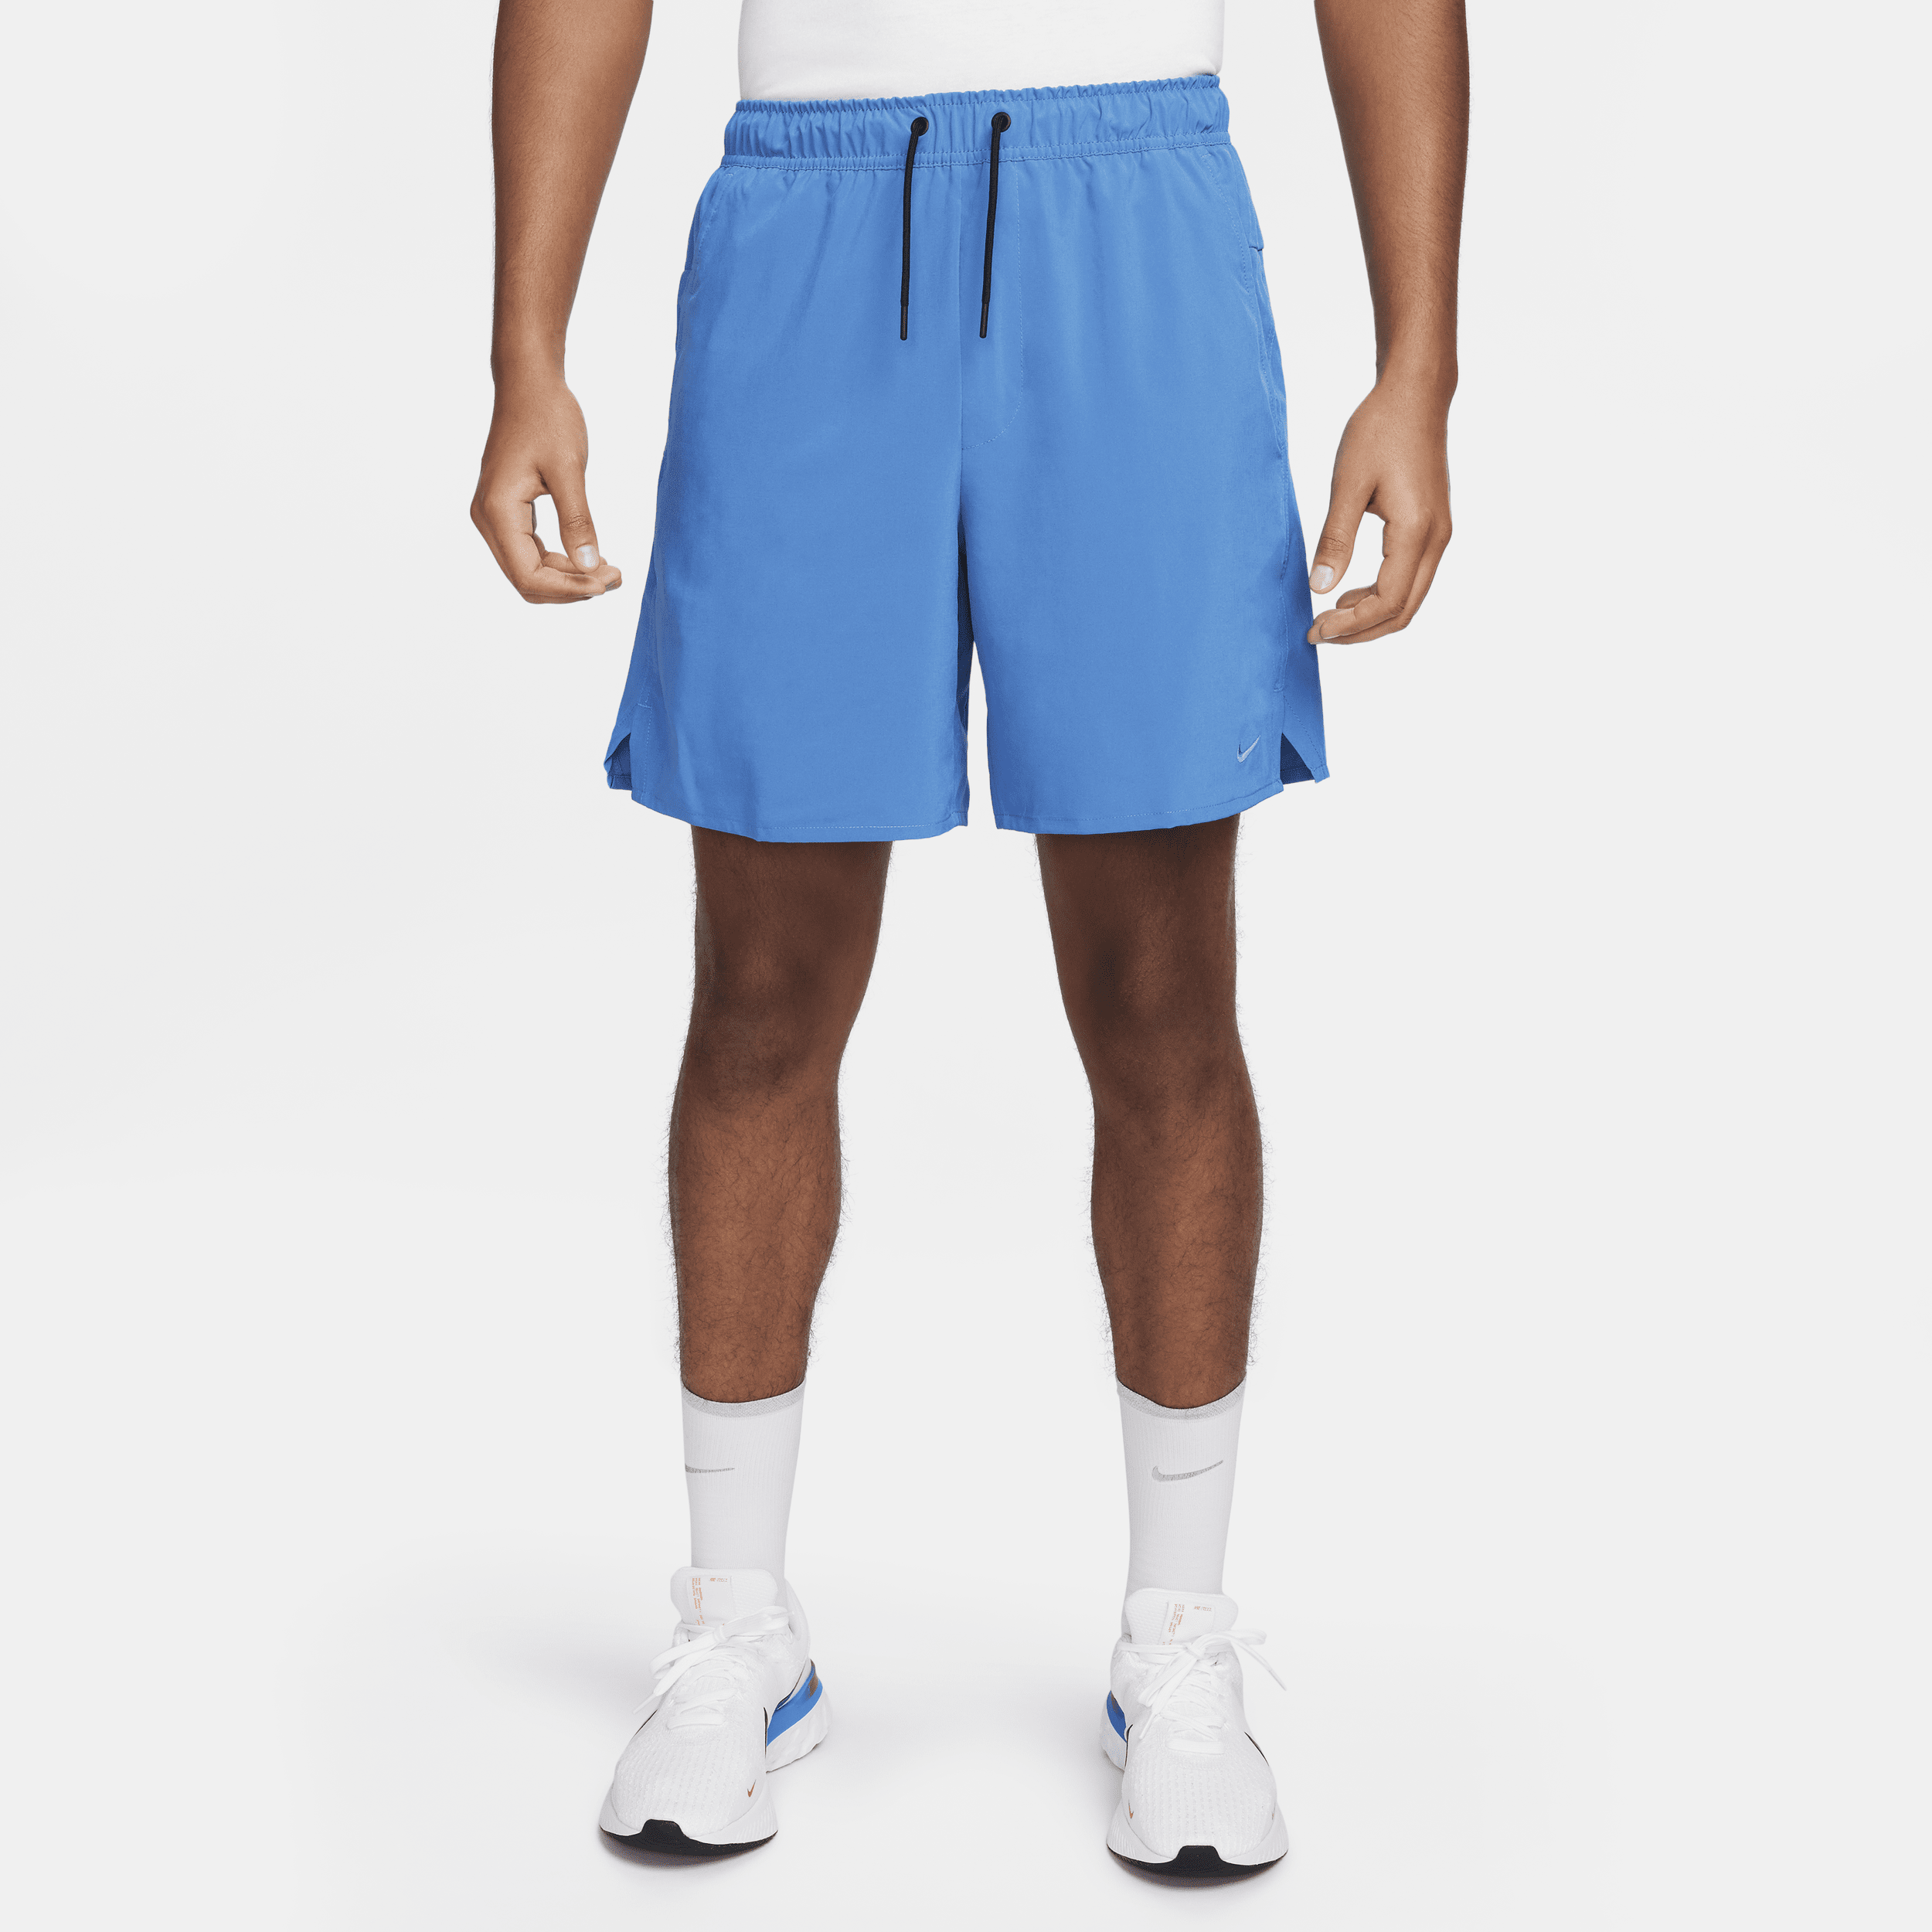 Alsidige Nike Unlimited-Dri-FIT-shorts (18 cm) uden for til mænd - blå